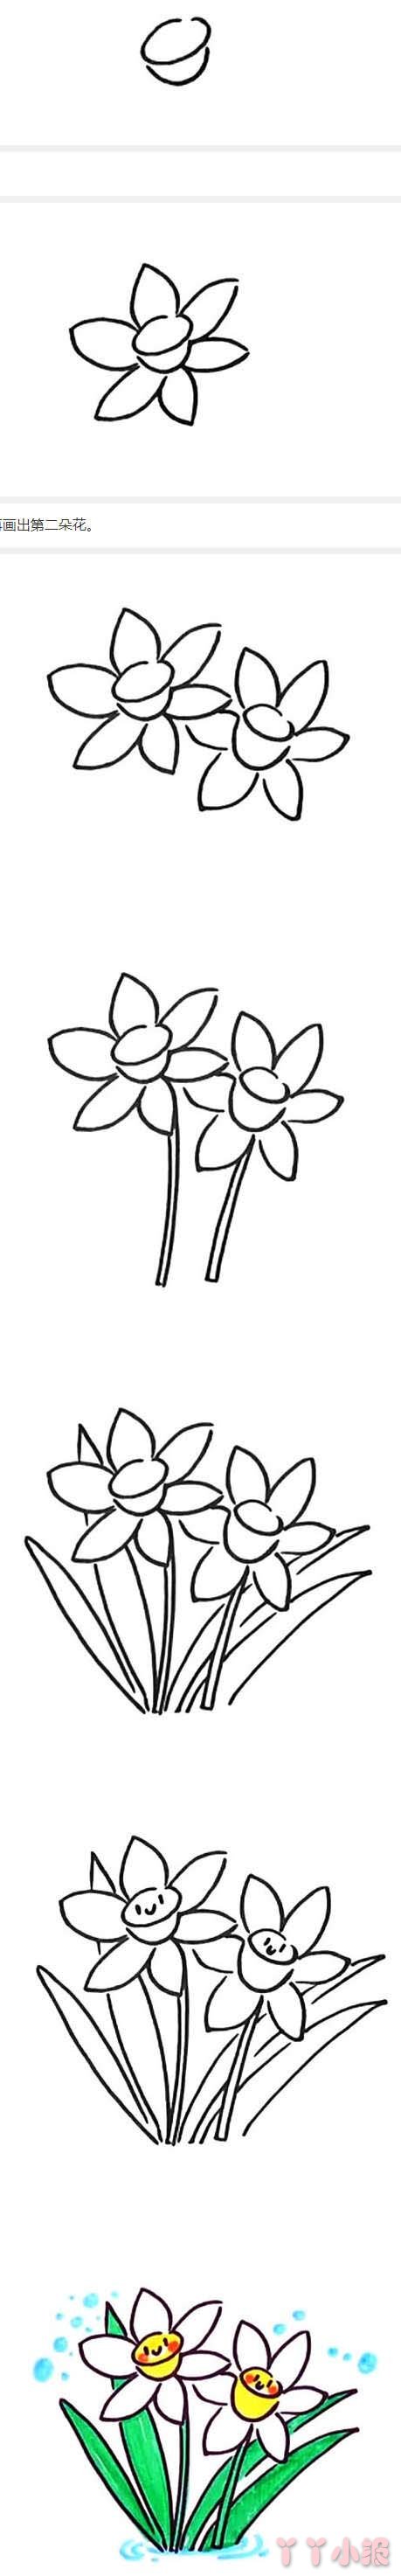 水仙花的画法步骤教程涂色简单又漂亮